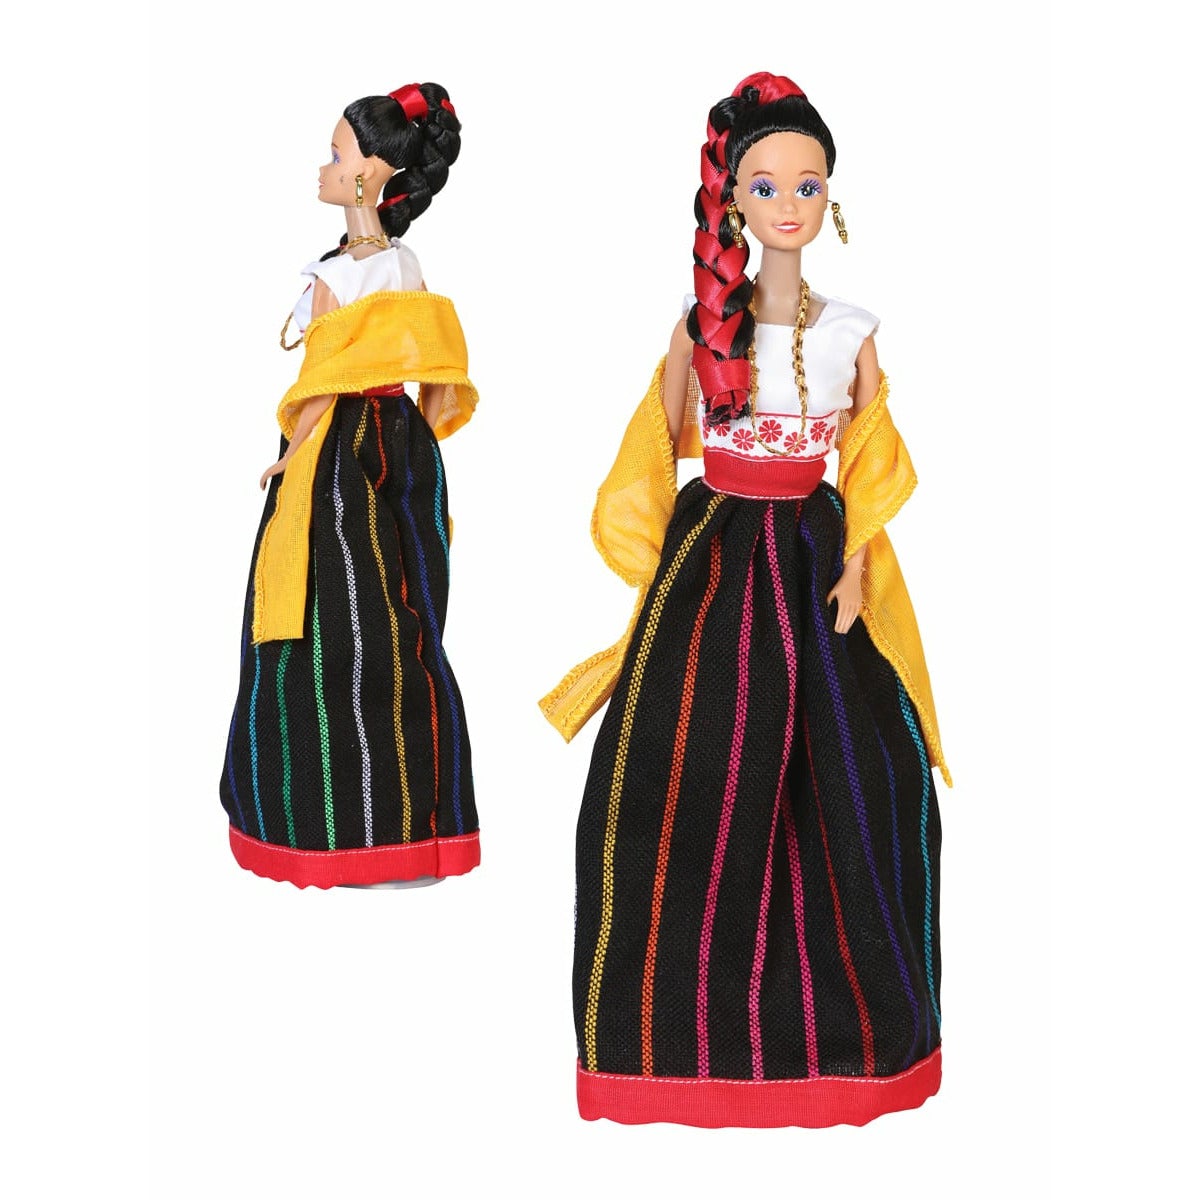 Tlaxcala Mexican Doll - CharroAzteca.com